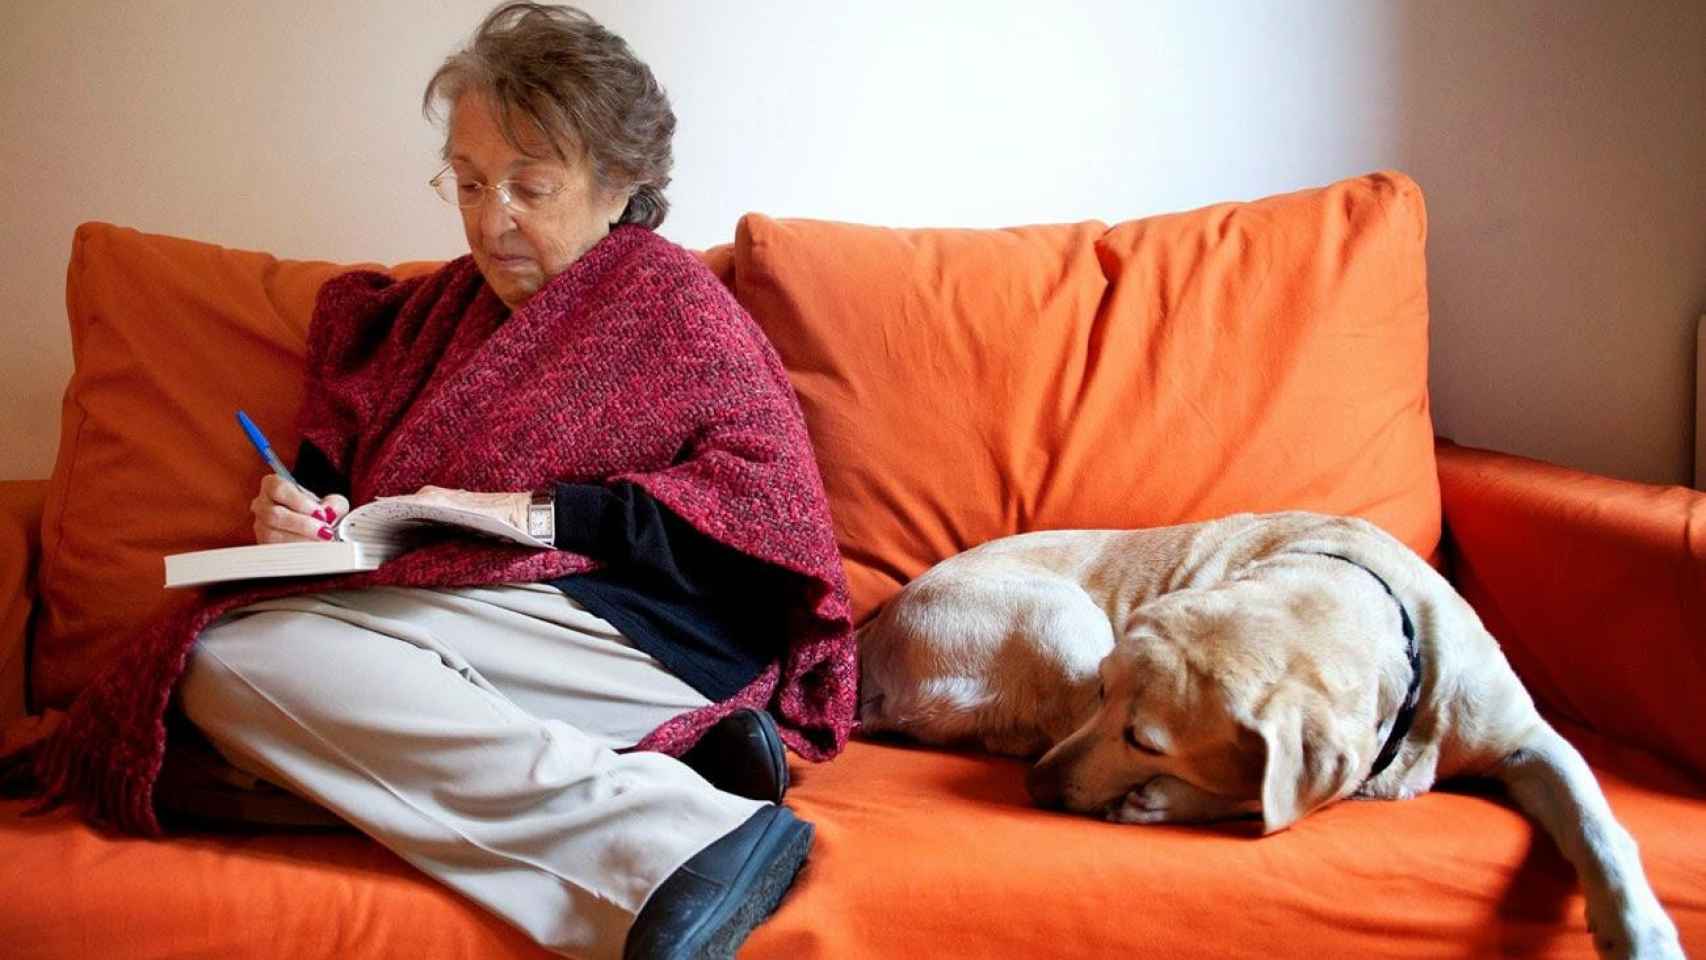 La editora Esther Tusquets, con su perro / LUMEN